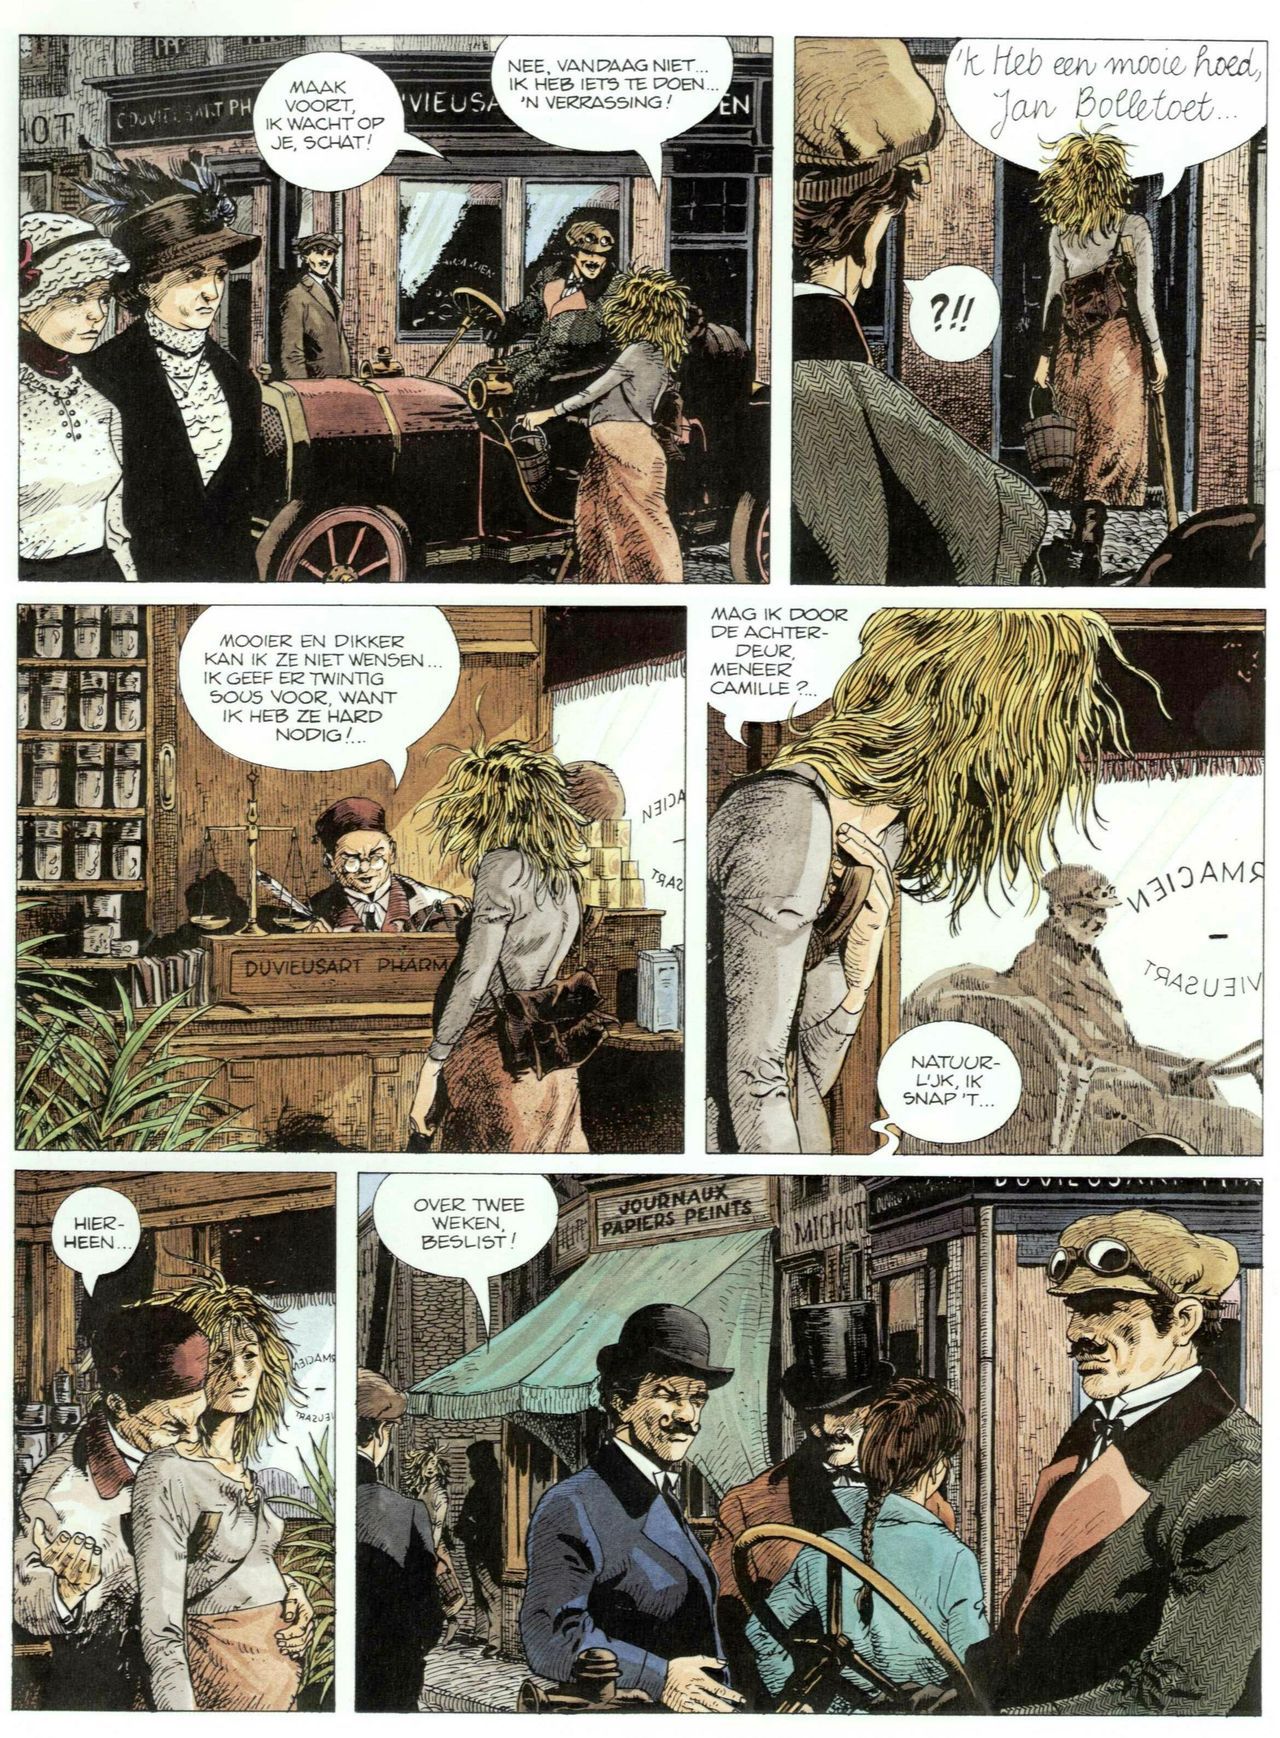 Bosliefje - 01 - Julien (Dutch) Franstalige strips die op deze site staan, hier is de Nederlandse uitgave! 9